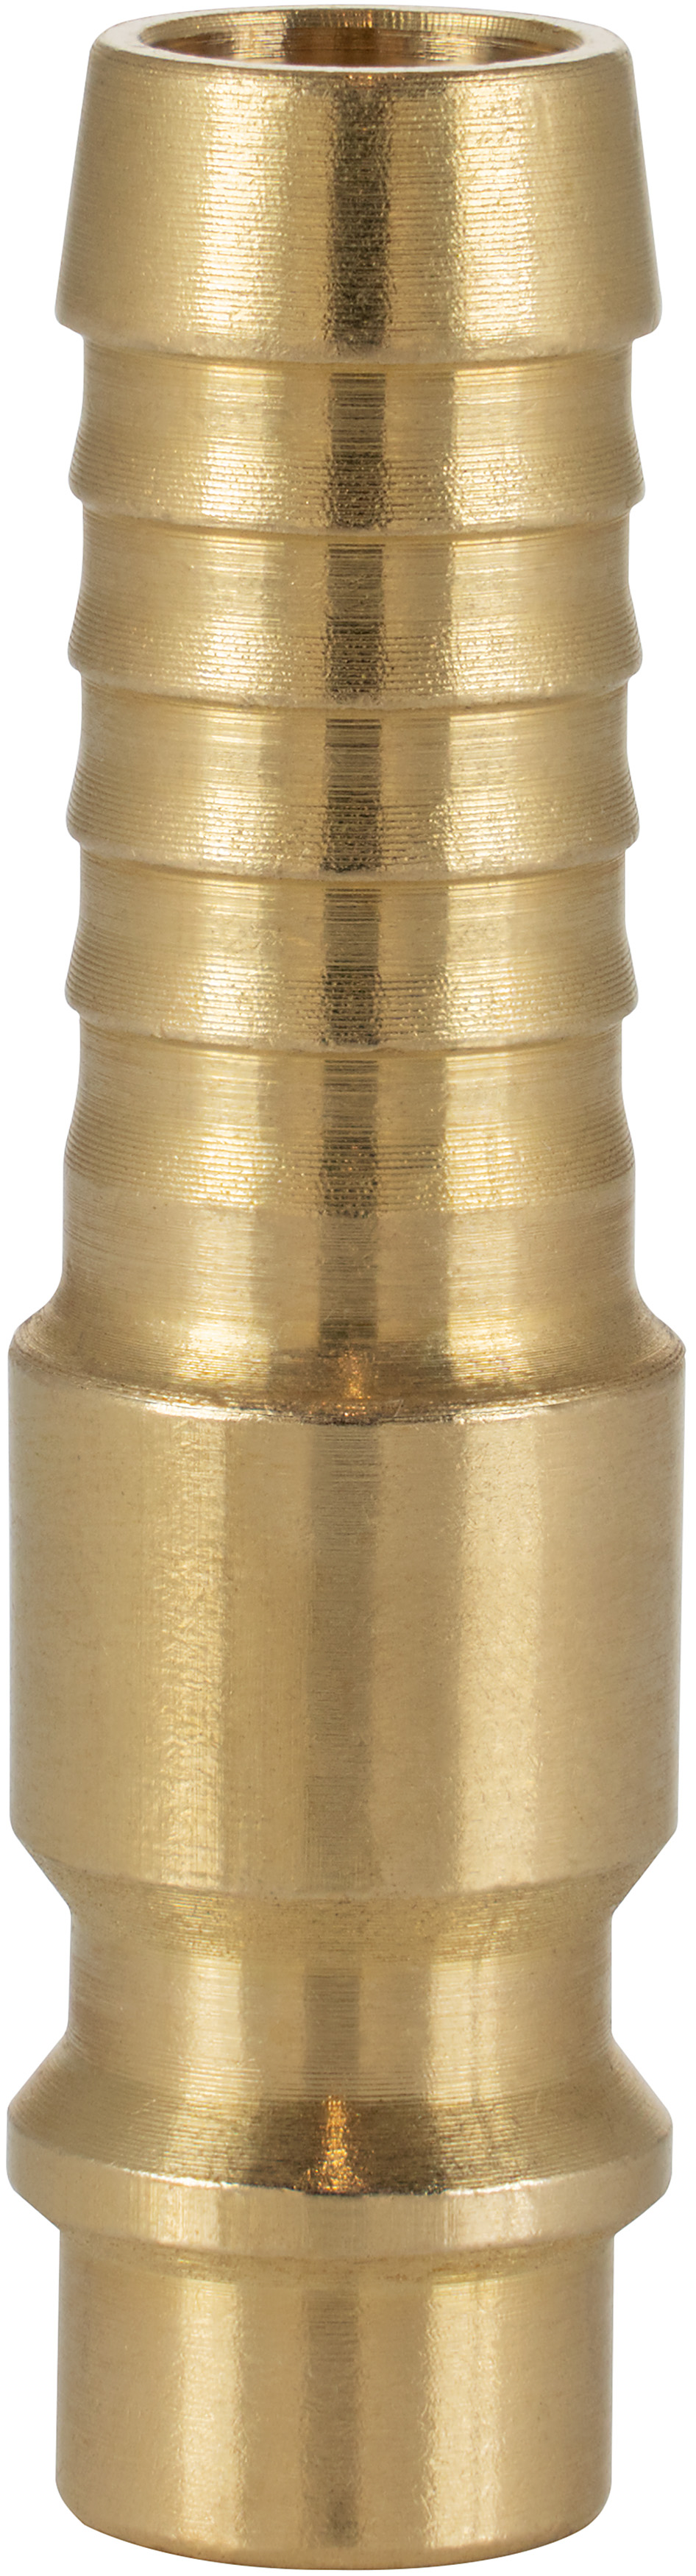 Druckluft-Kupplung Stecknippel NW 7,2 mit Tülle Ø 10mm